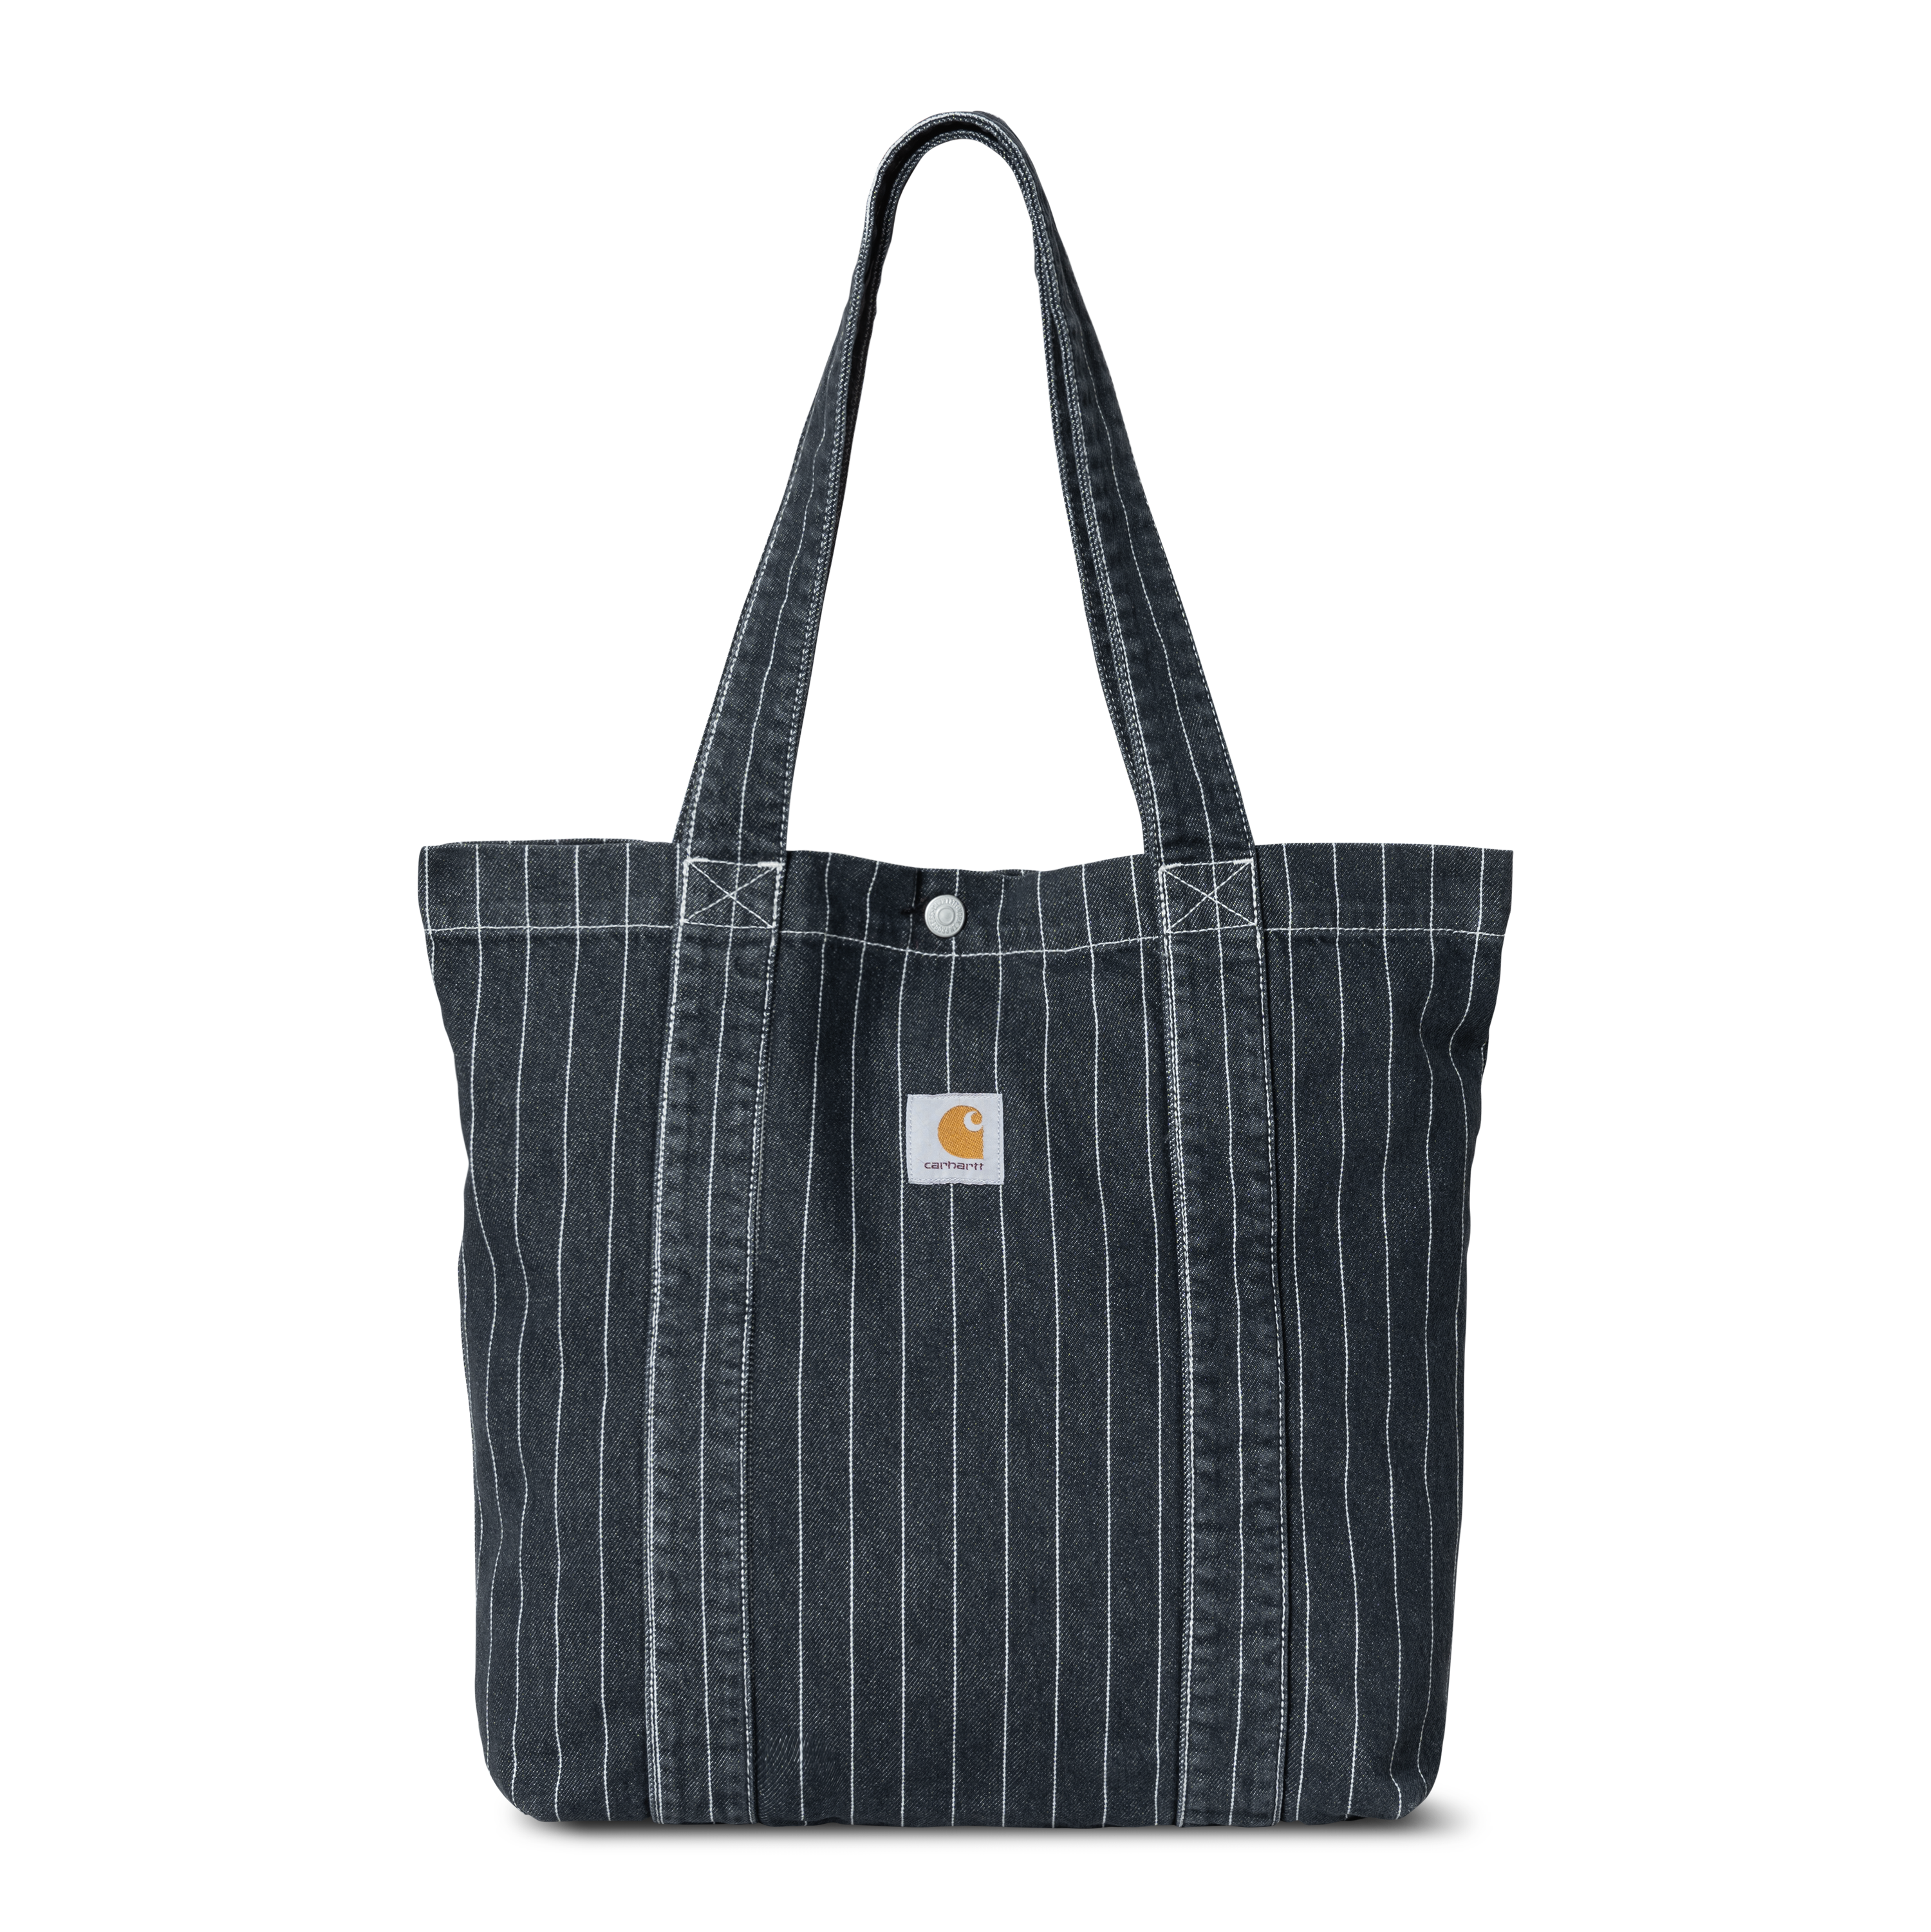 Carhartt WIP Orlean Tote Bag in Black